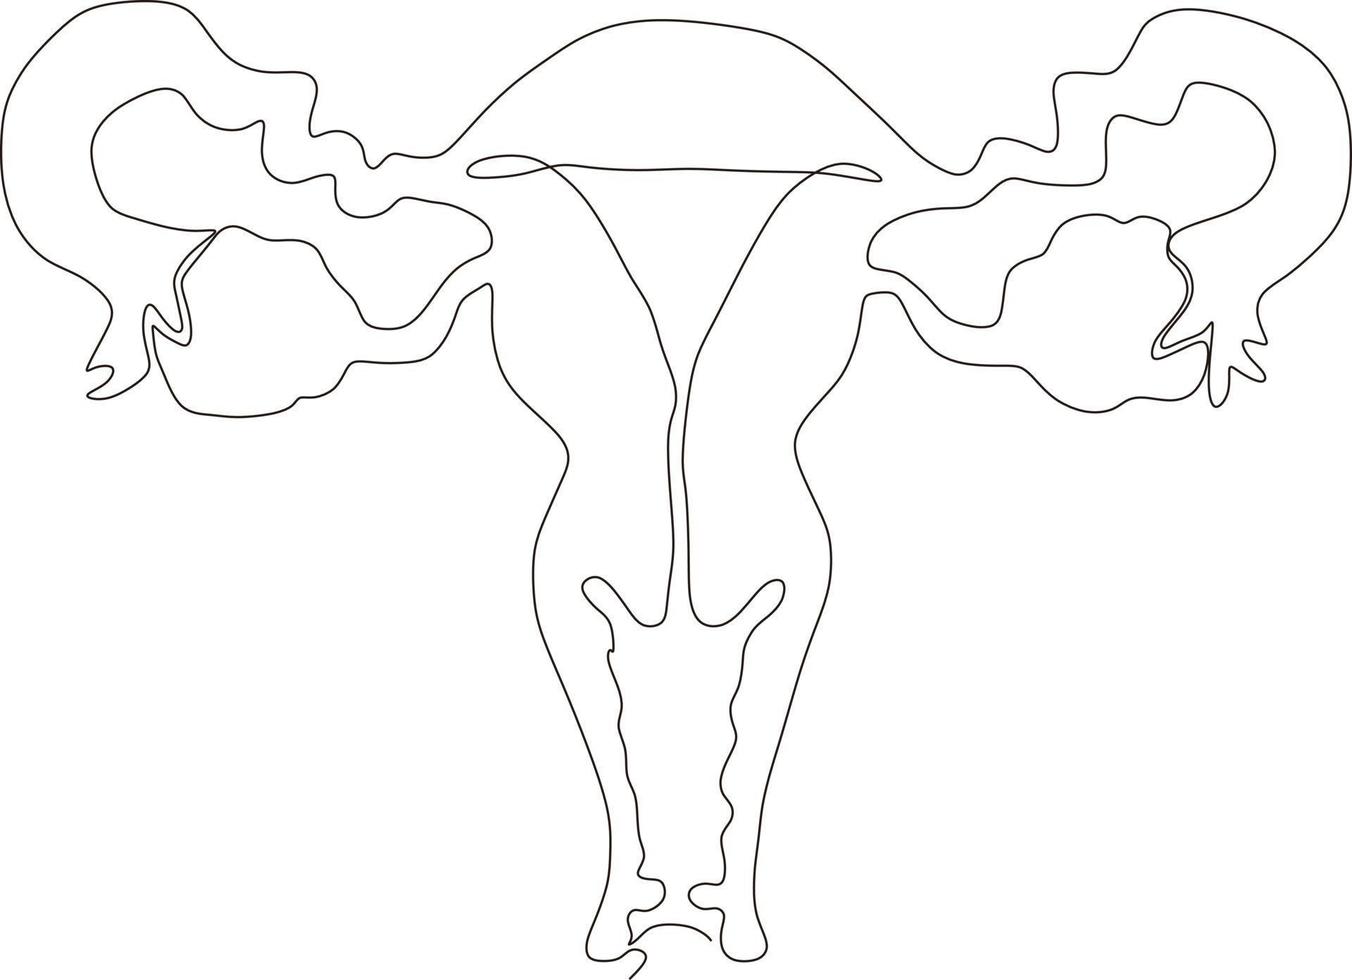 dessin au trait continu de l'utérus reproducteur féminin vecteur